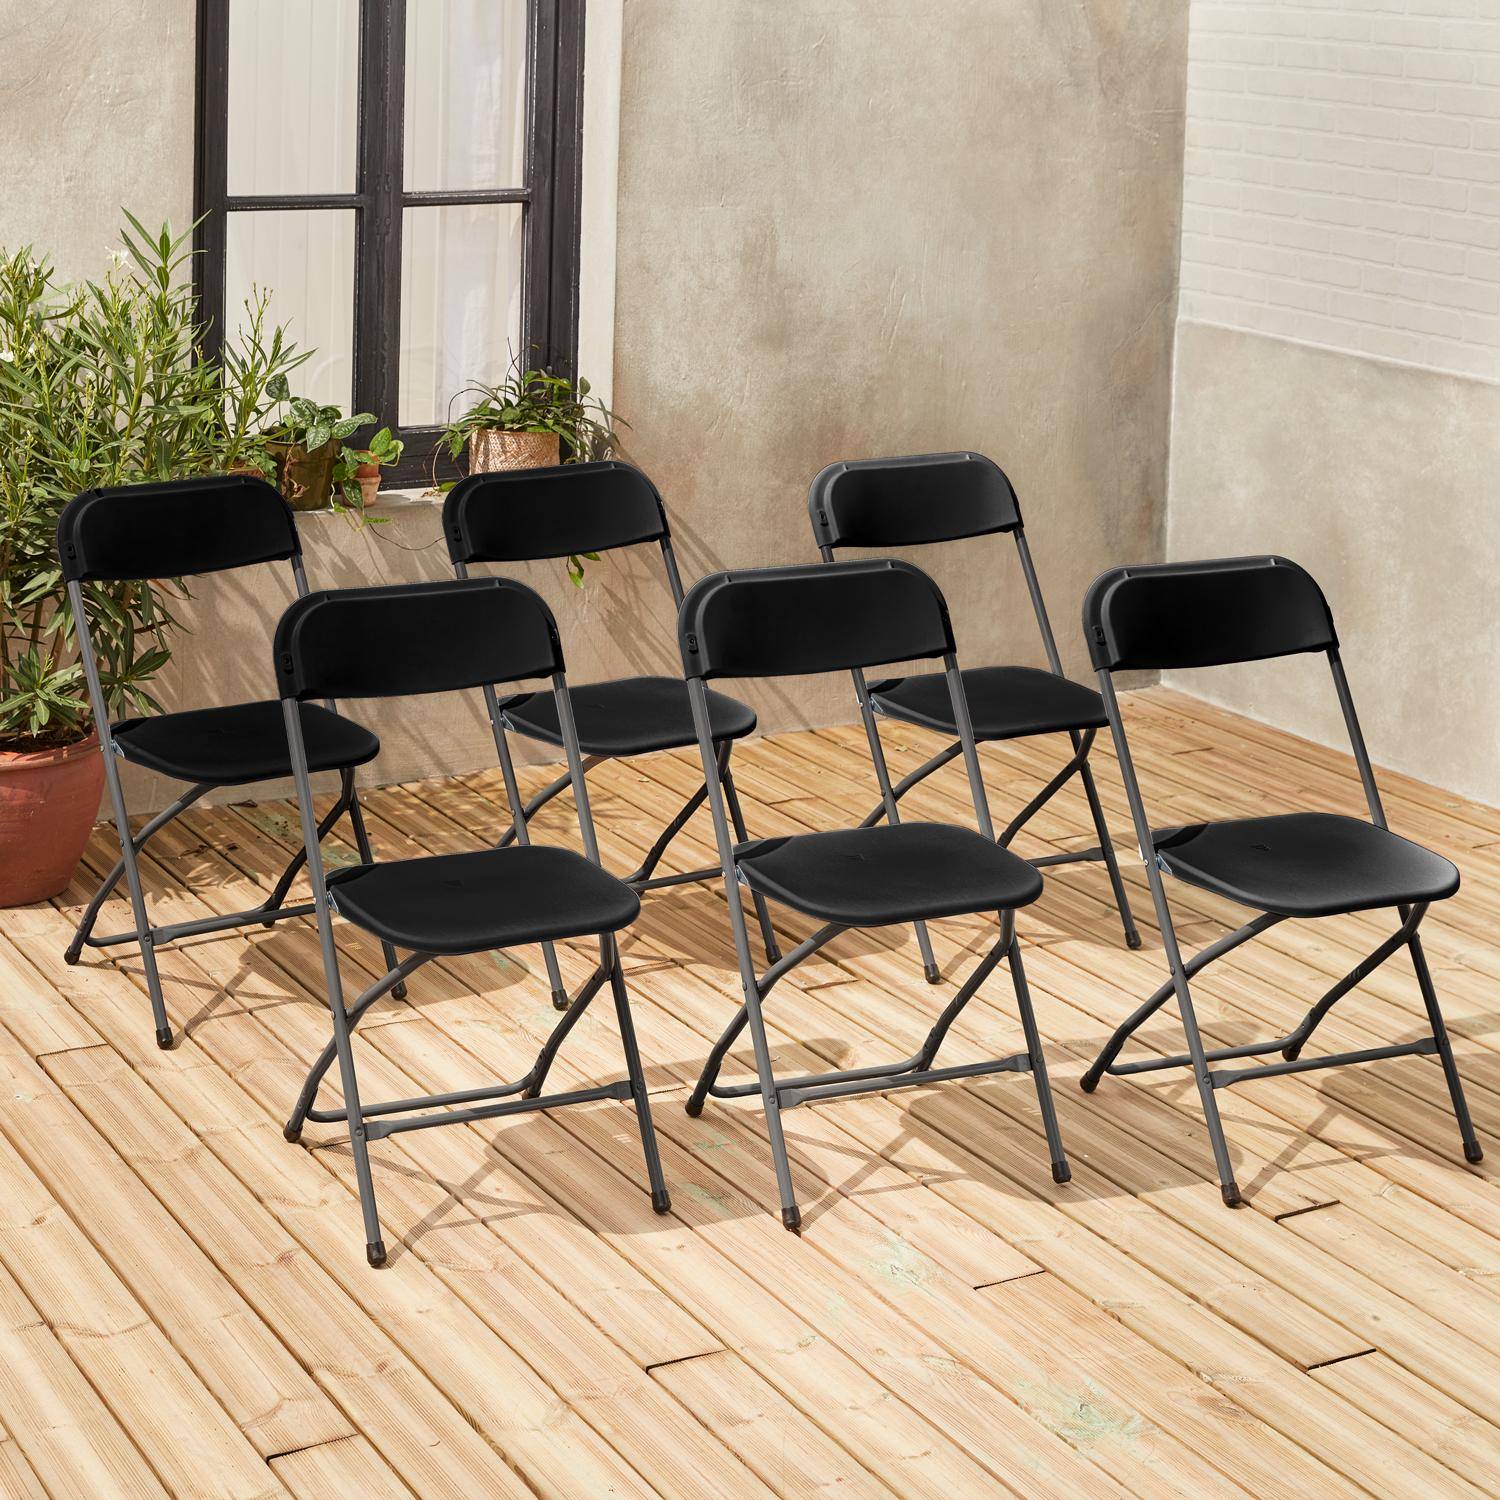  Chaises pliantes - Fiesta - 6 chaises latérales en plastique et métal gris foncé Photo1